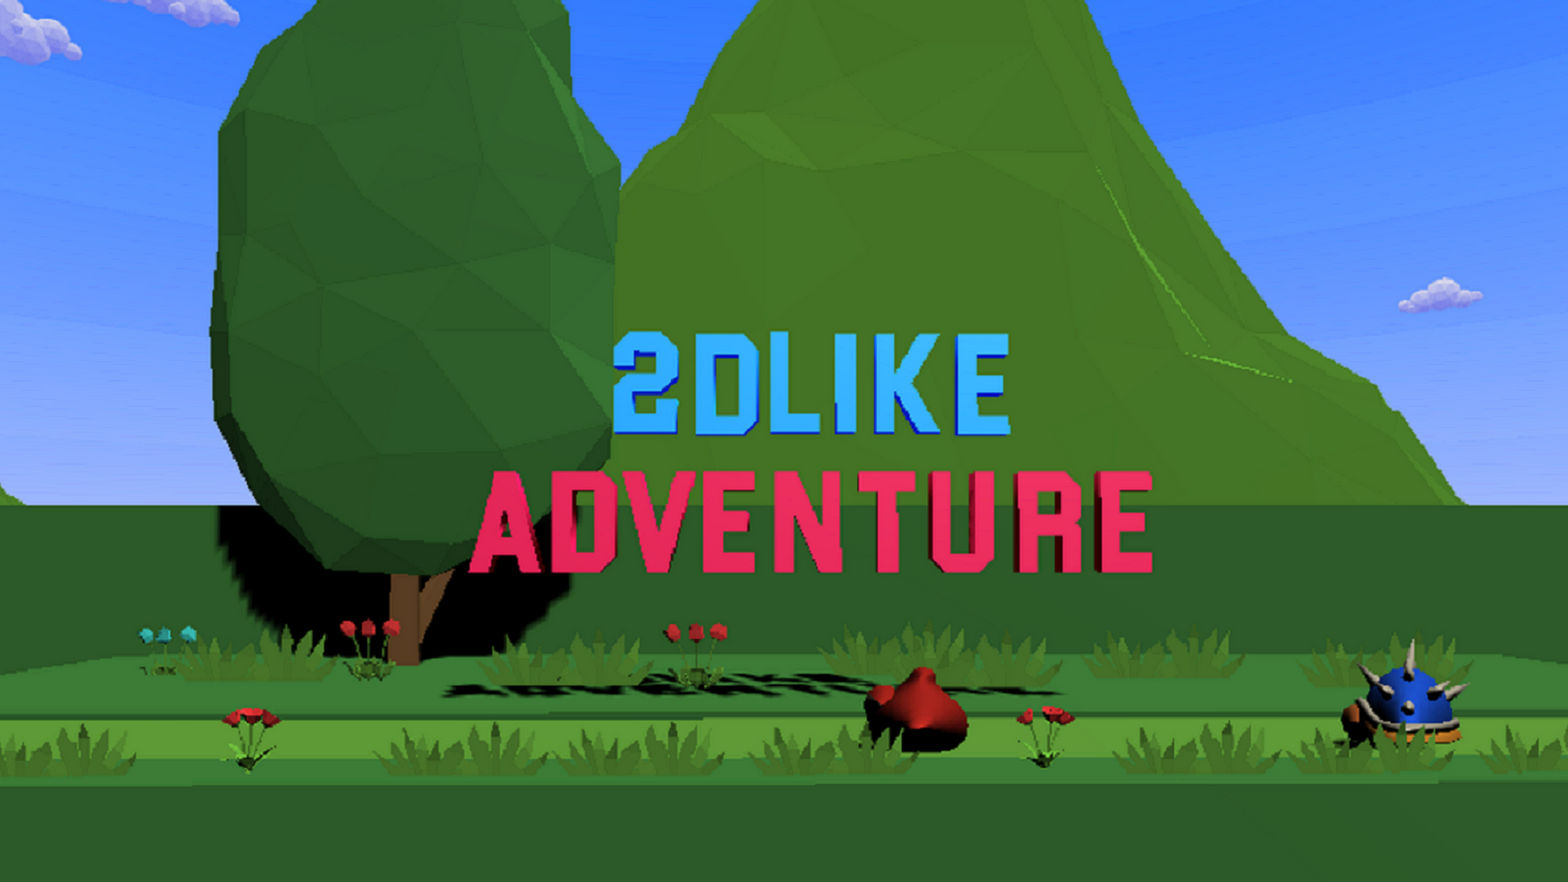 2DLike Adventure